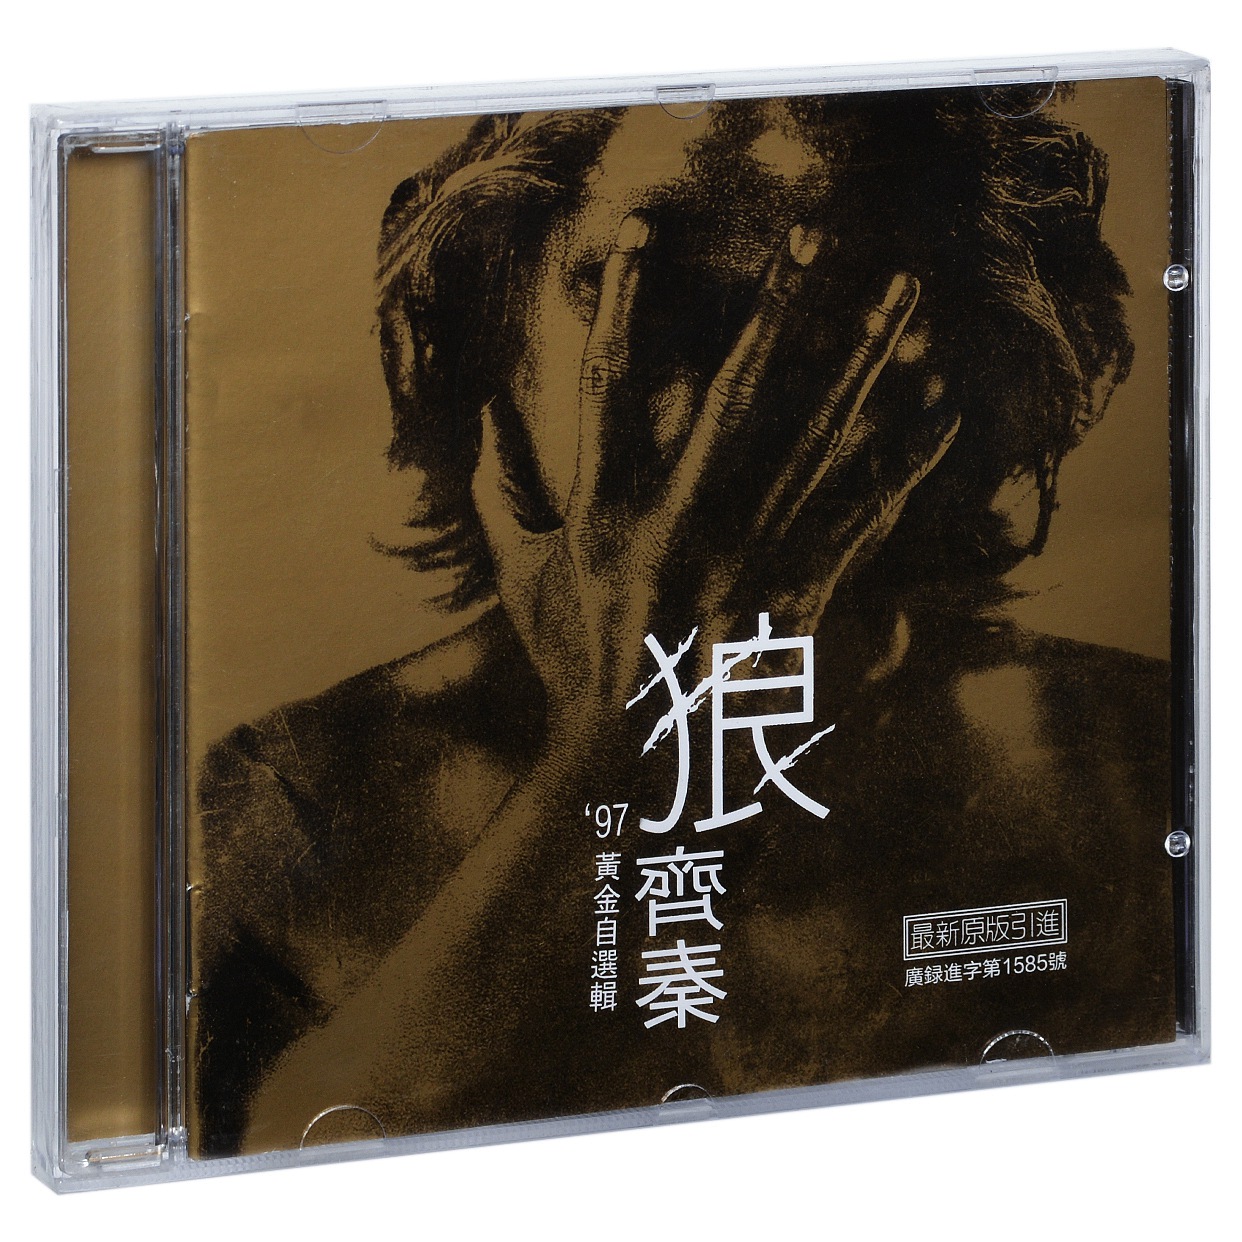 正版齐秦 狼 97黄金自选辑 1997专辑 星芸/美卡唱片CD碟片